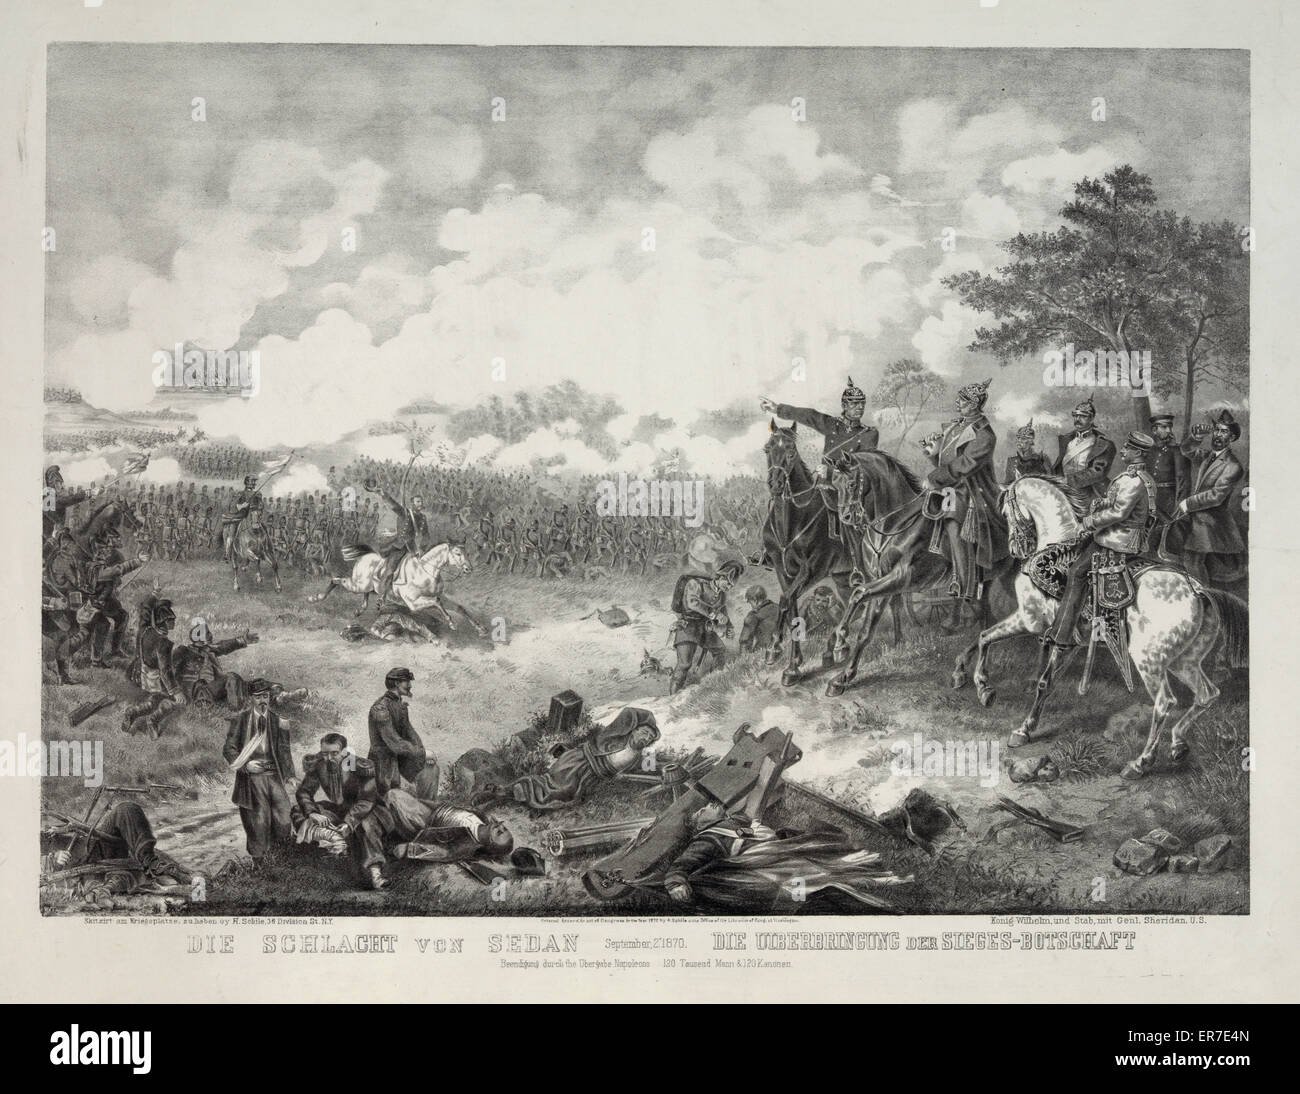 Sterben Sie Schlacht von Sedandie Uiberbringung der Belagerungen-Beschaffenheit, 2. September 1870. Datum c1870. Stockfoto